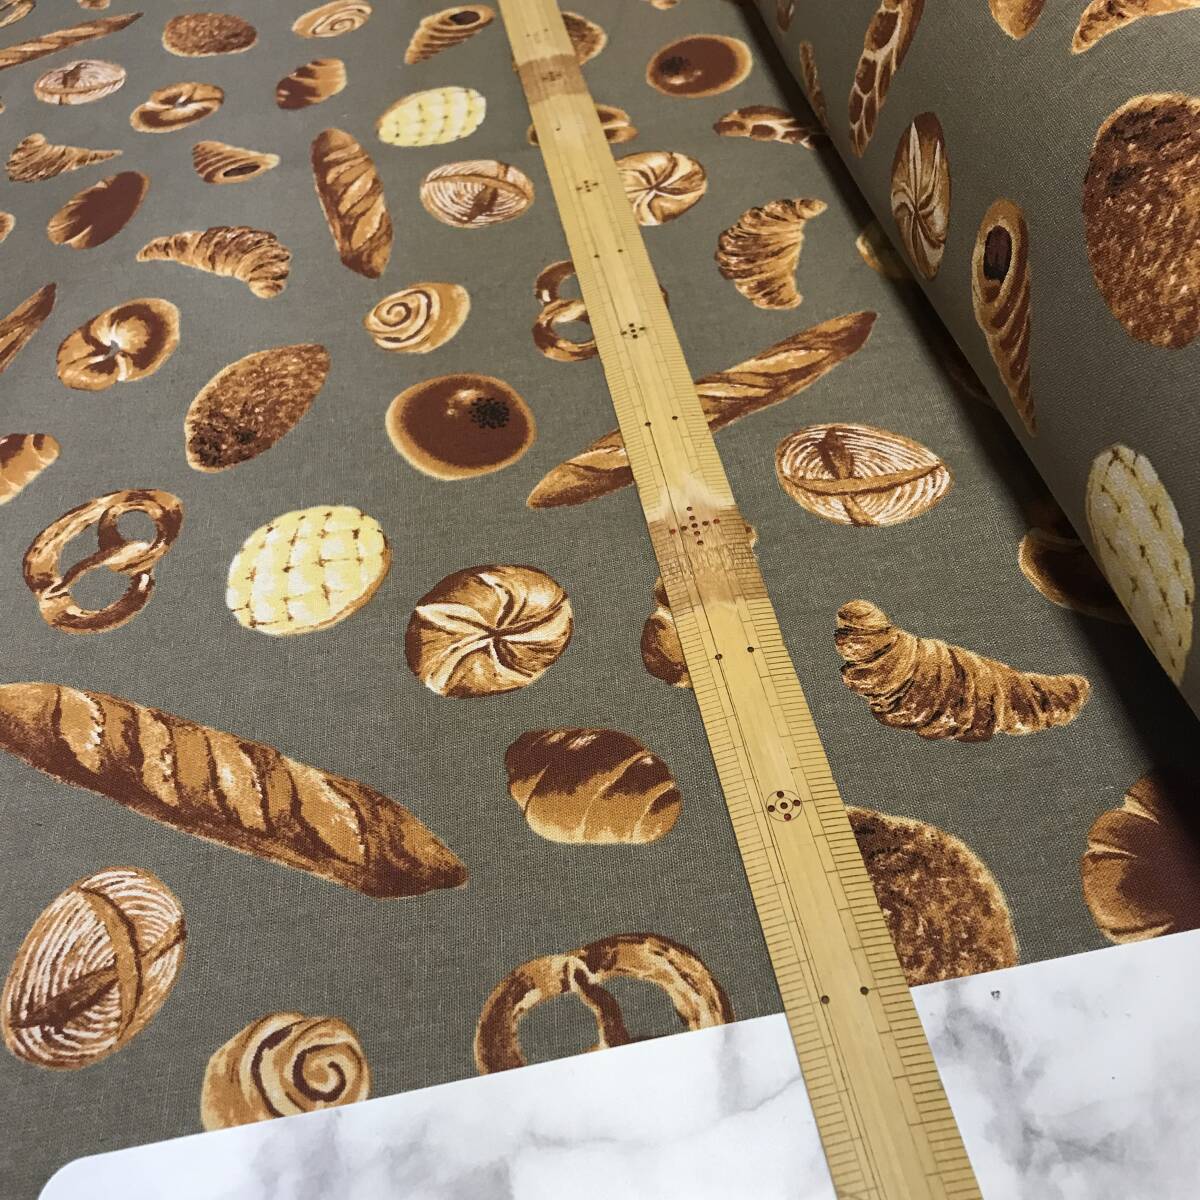  сделано в Японии 3m хлопок лен парусина хлеб рисунок ④ серый ткань - gire